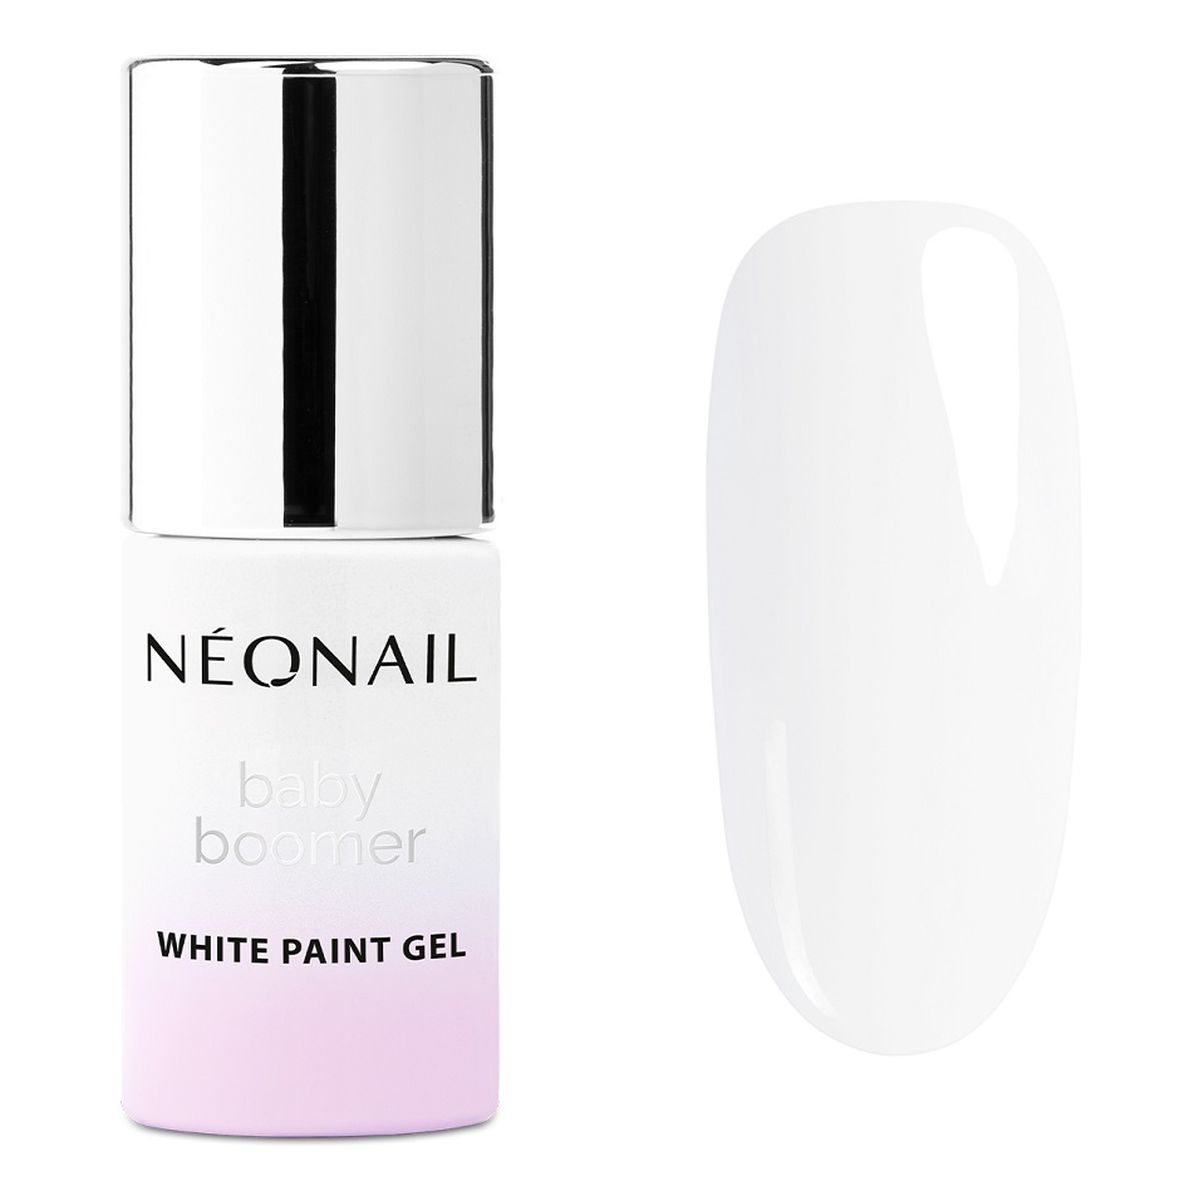 NeoNail Baby Boomer White Paint Gel biały Żel do zdobień 6.5ml